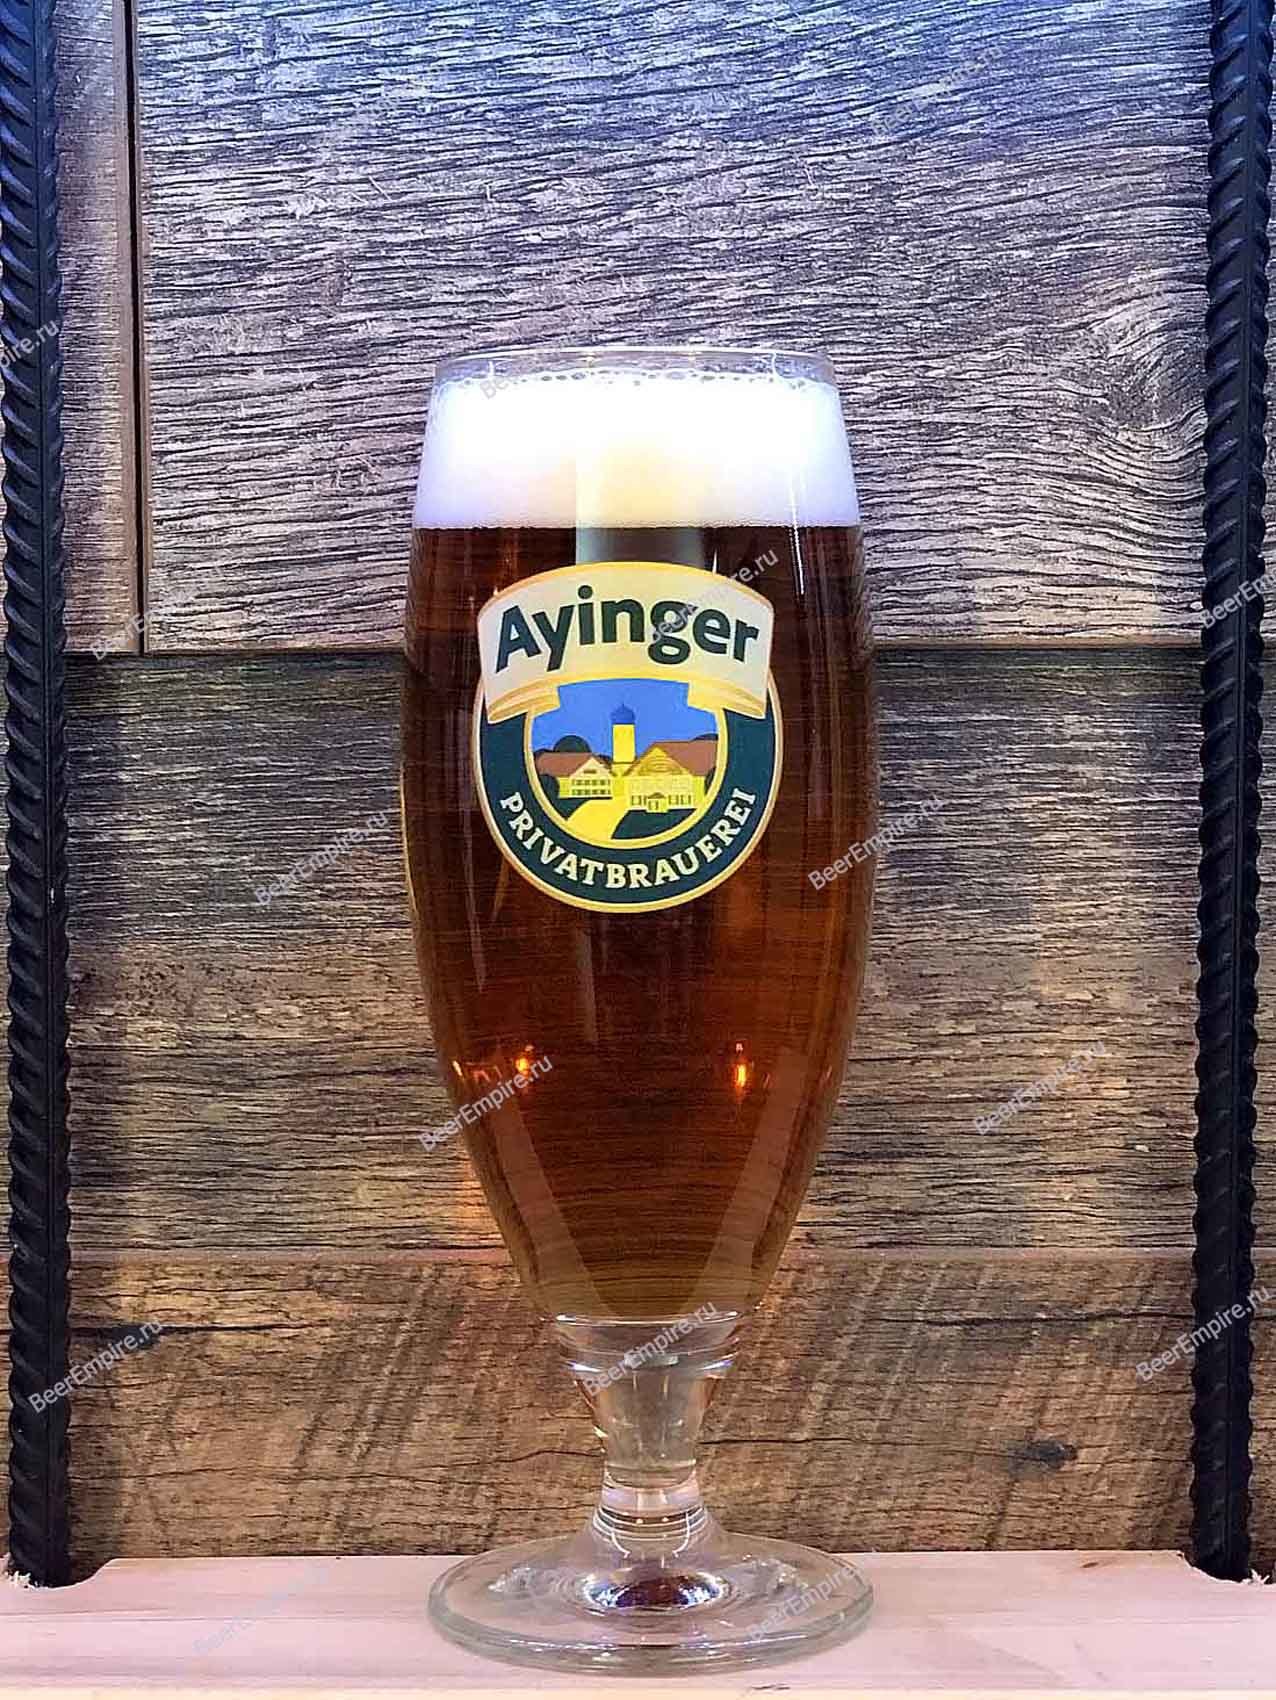 Пиво ayinger купить. Айнгер лагер. Ayinger пиво. Аингер лагер Хелл. Пиво Ayinger Lager Hell этикетка.